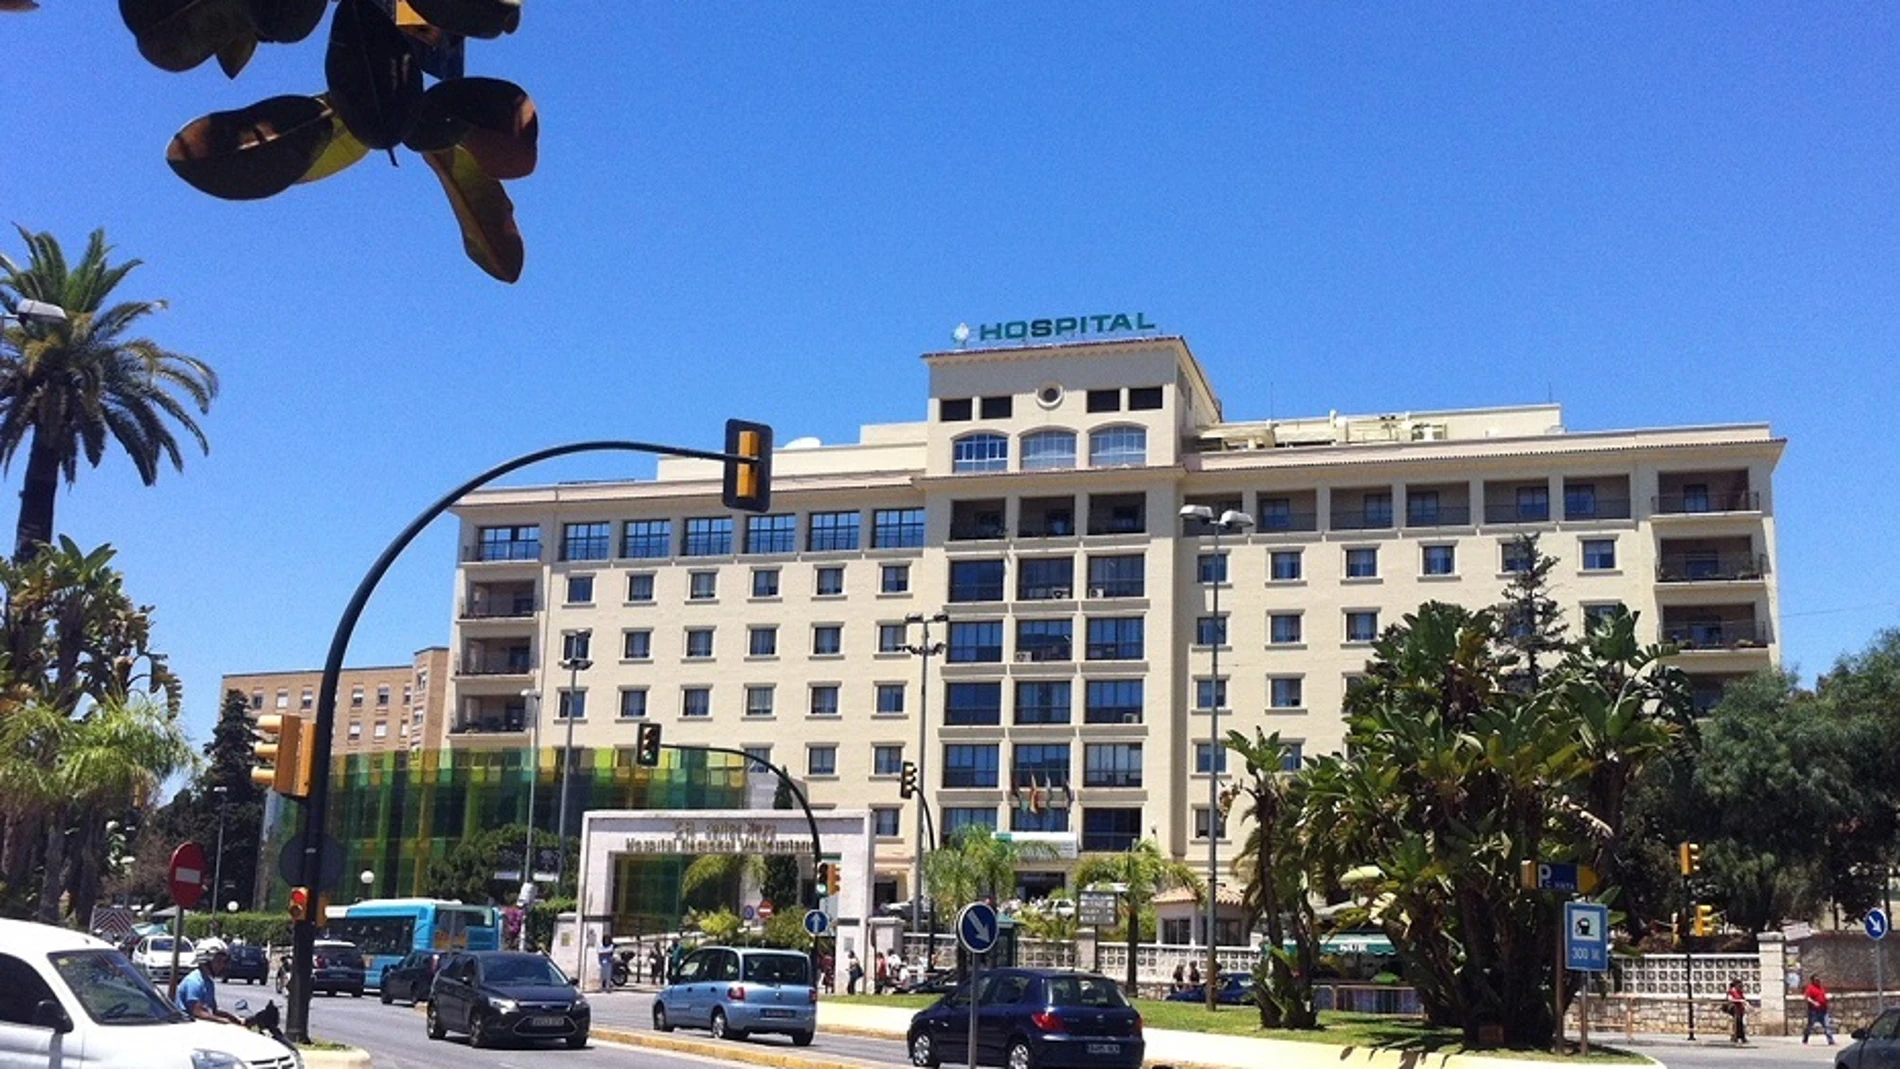 Vista exterior del Hospital Regional de Málaga, donde se produjo la agresión el pasado viernes